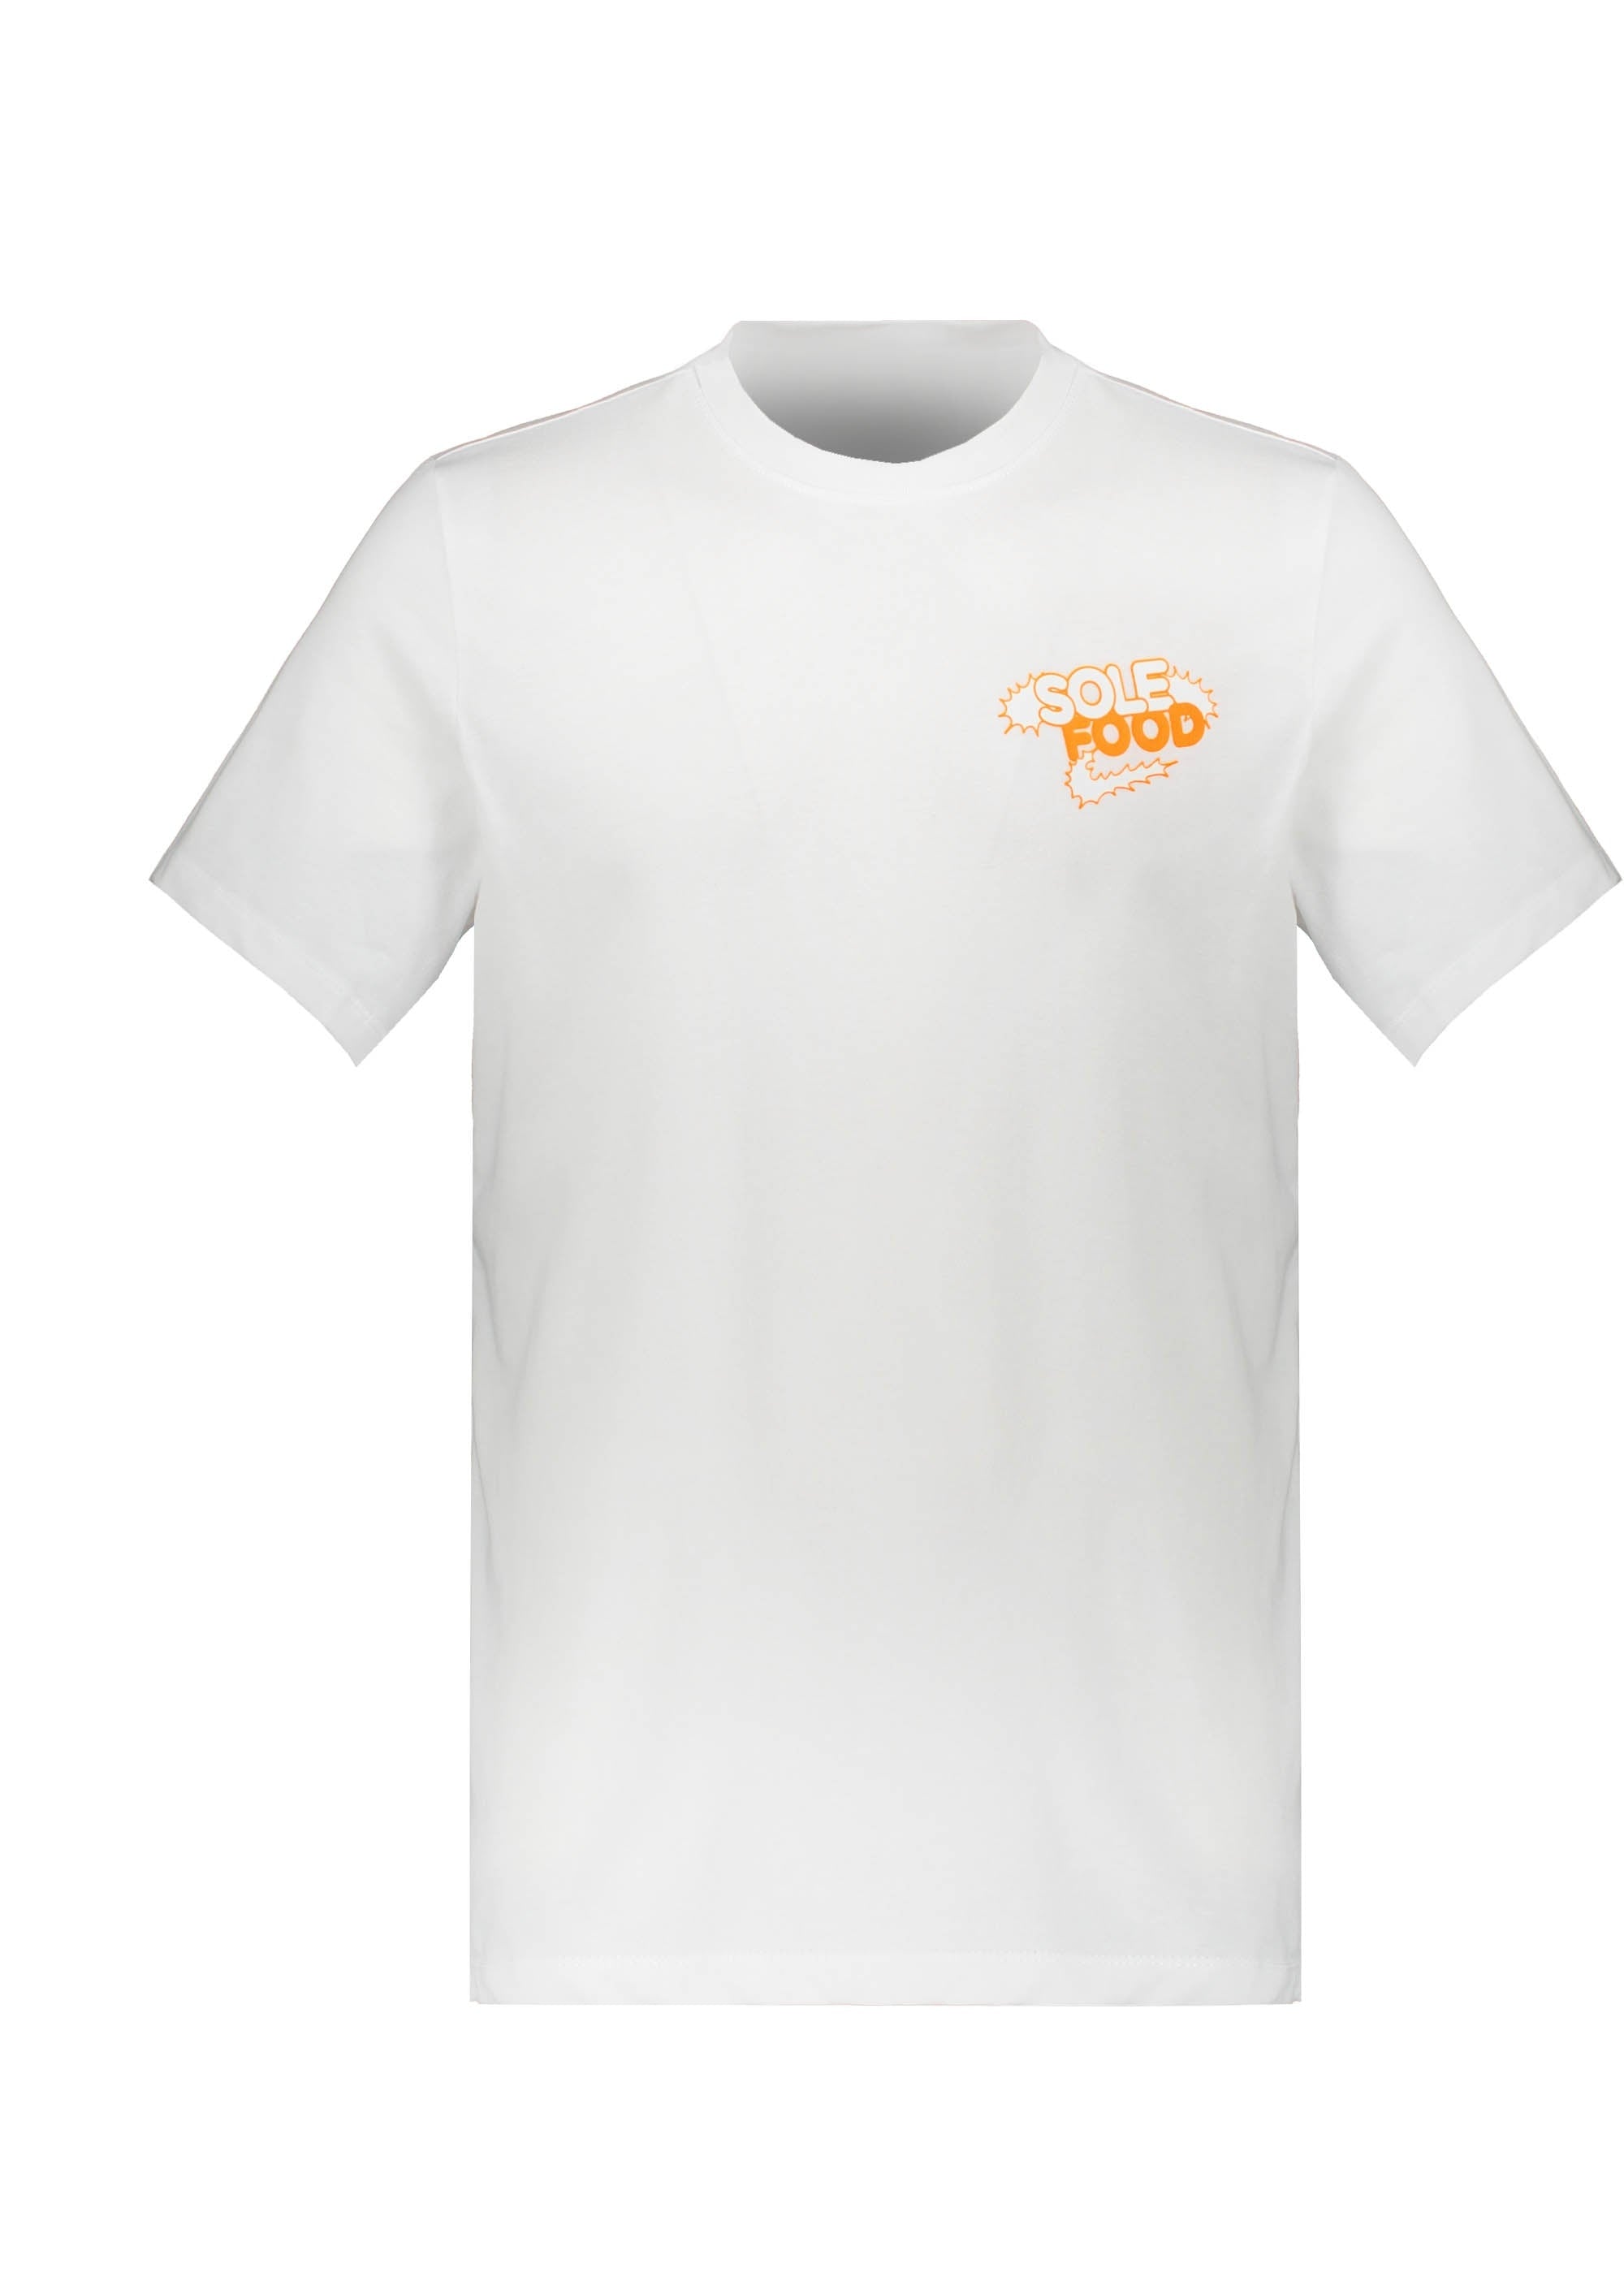 Nike Food Shoe T-Shirt - White – Triads